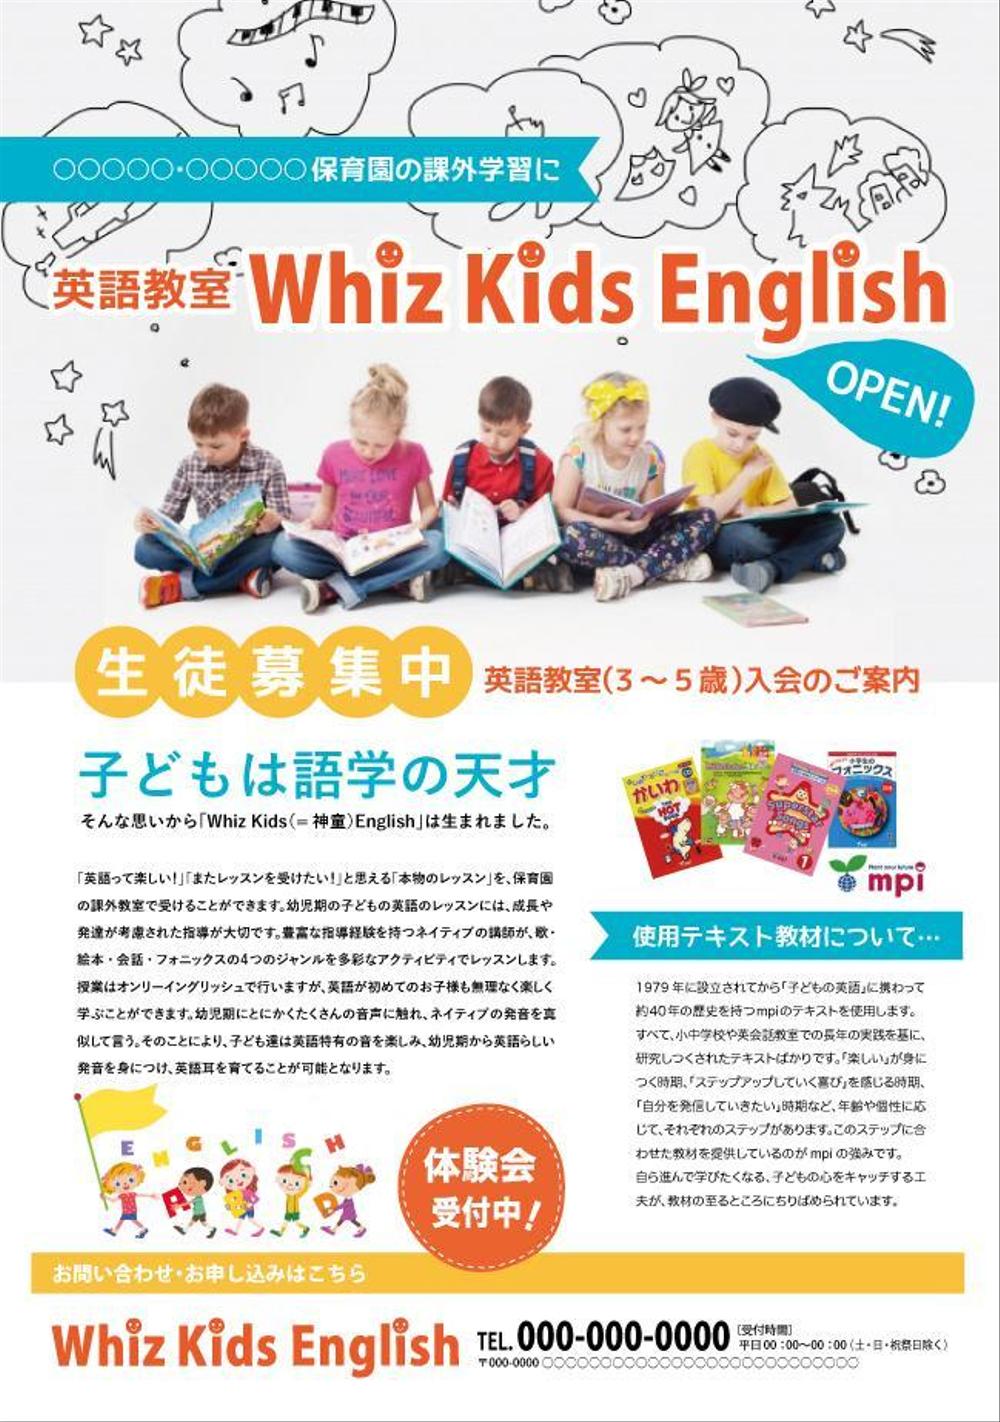 英語教室「Whiz Kids English」のチラシ